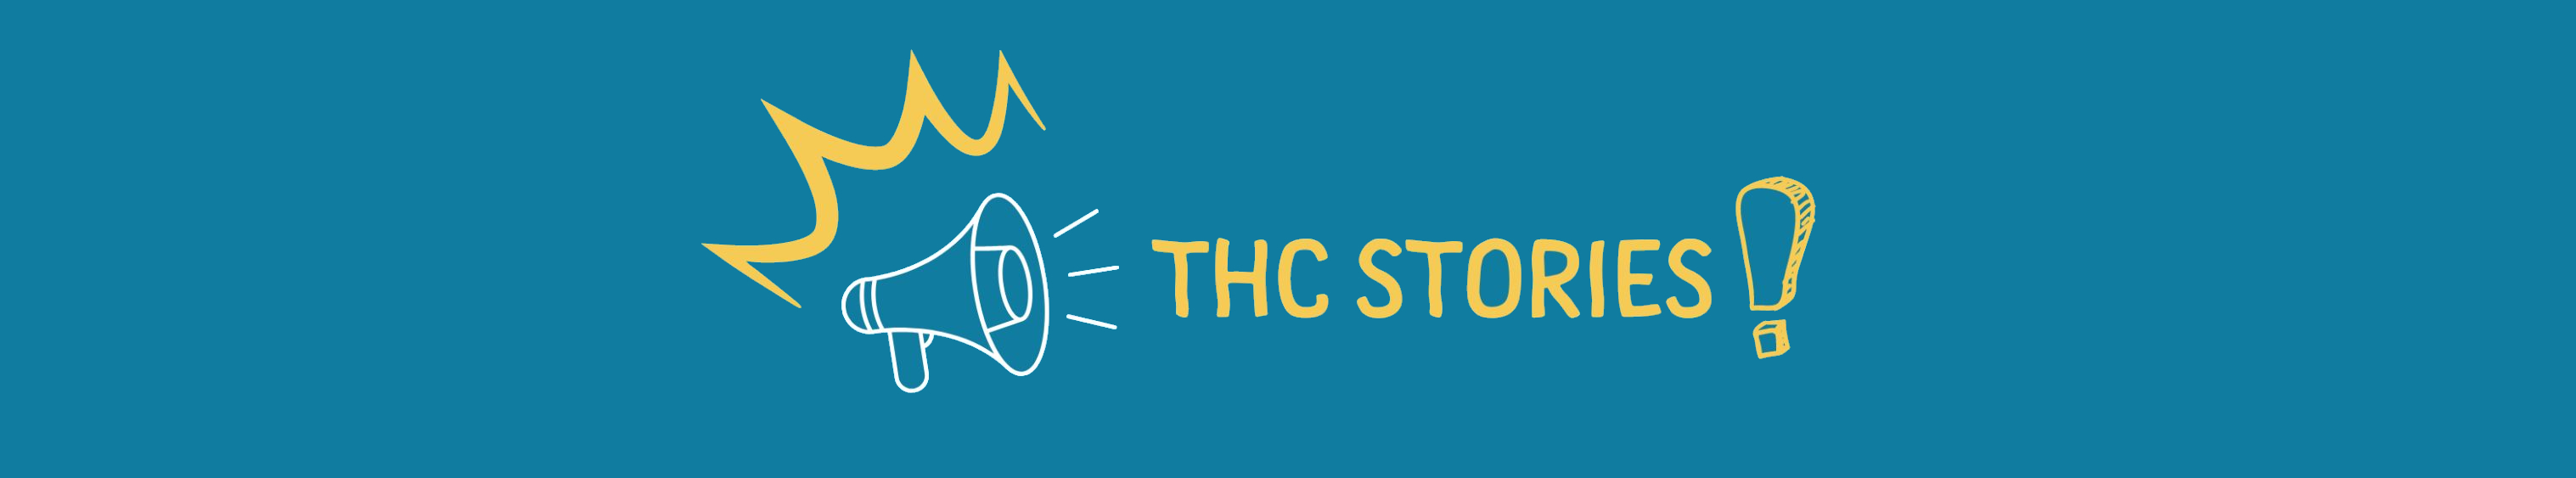 THC Stories Banner - Resized (1)